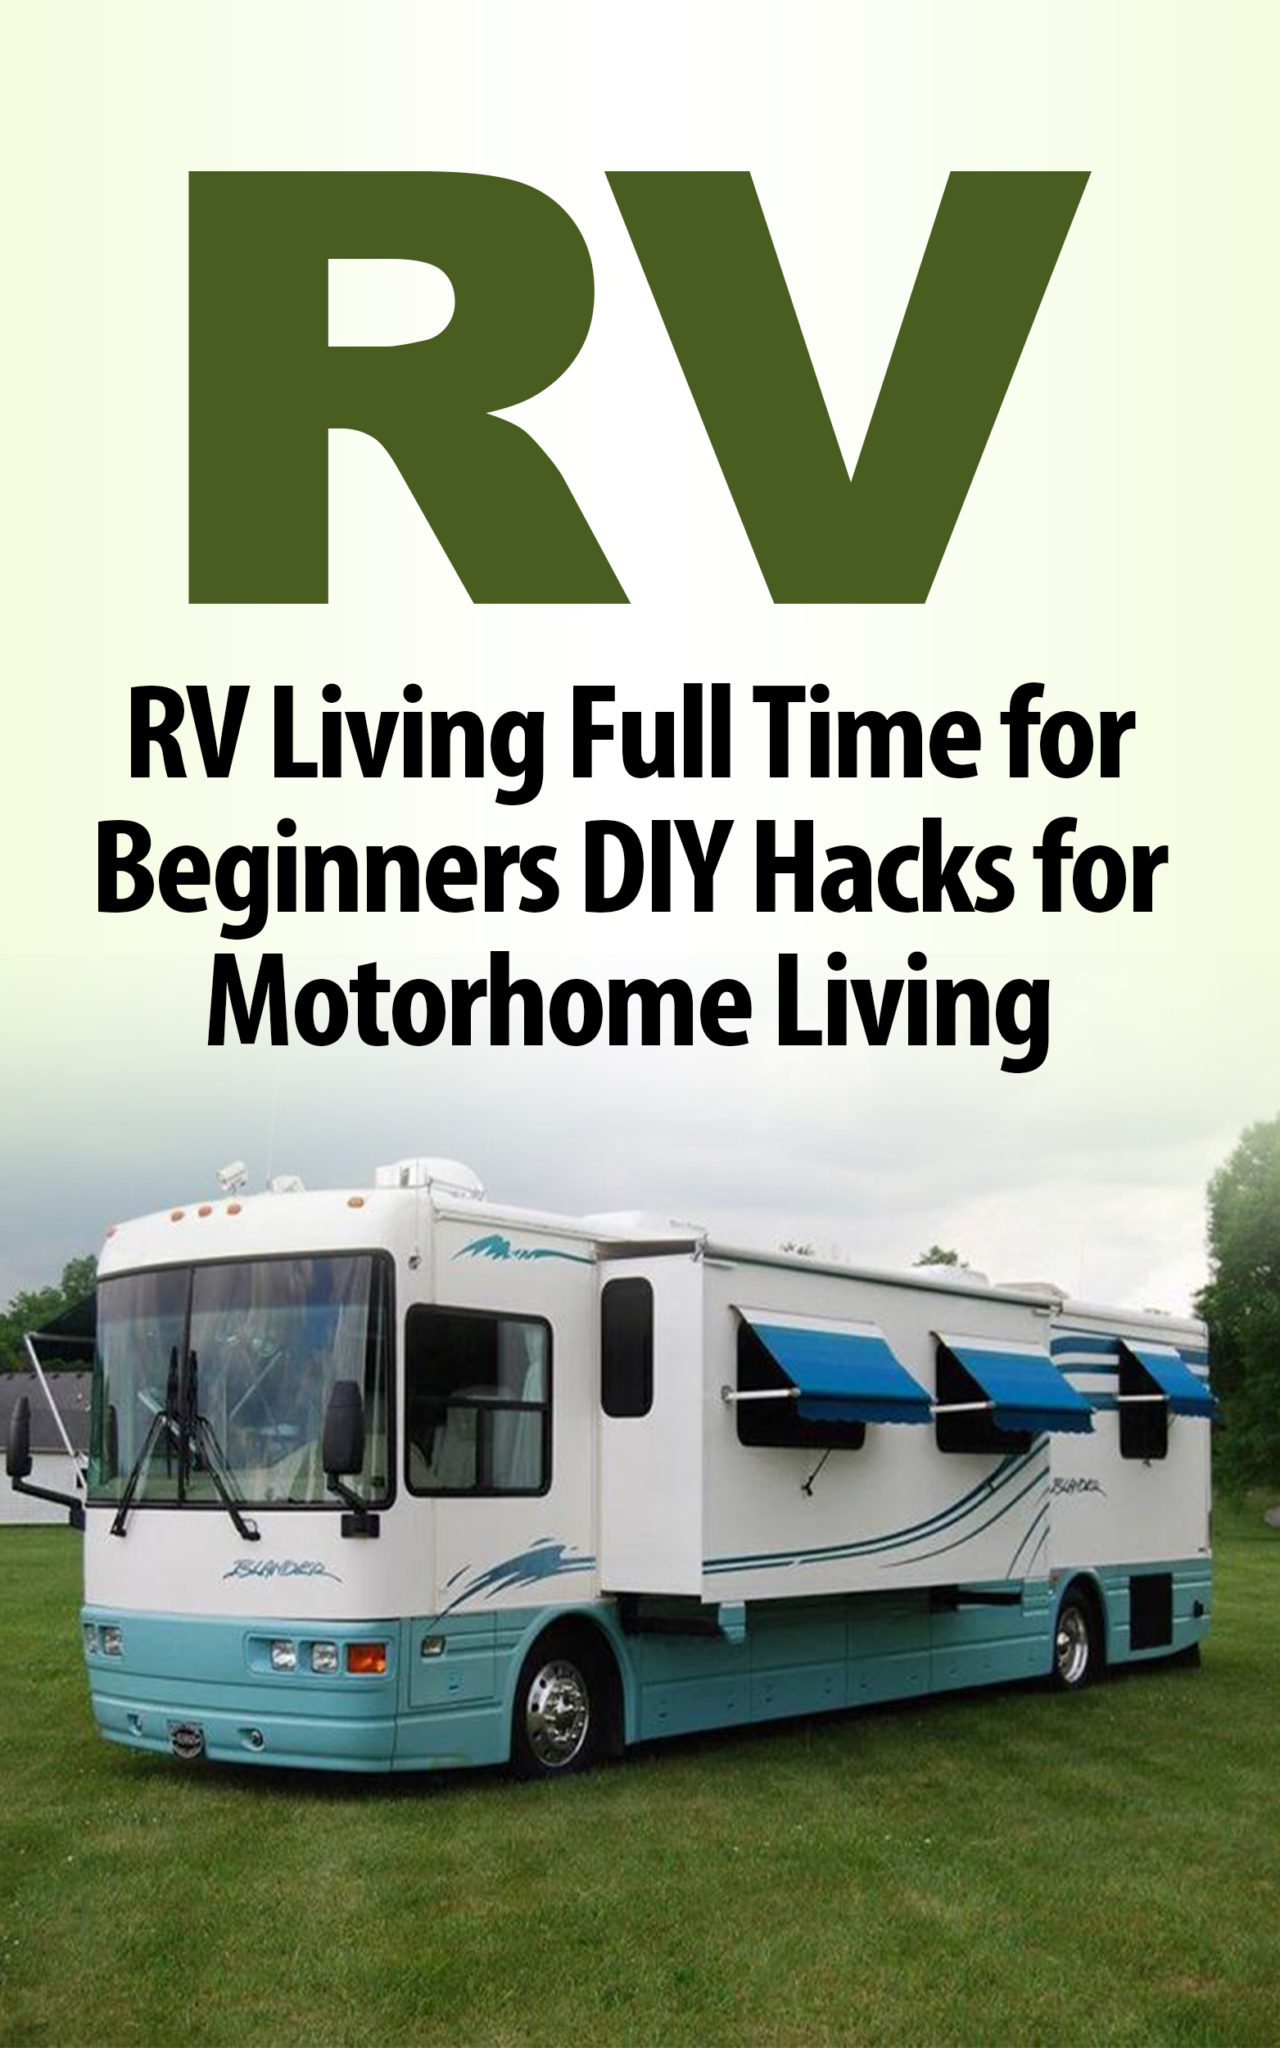 FREE: RV: RV Living Full Time for Beginners DIY Hacks for Motorhome Living by Tony Ferguson